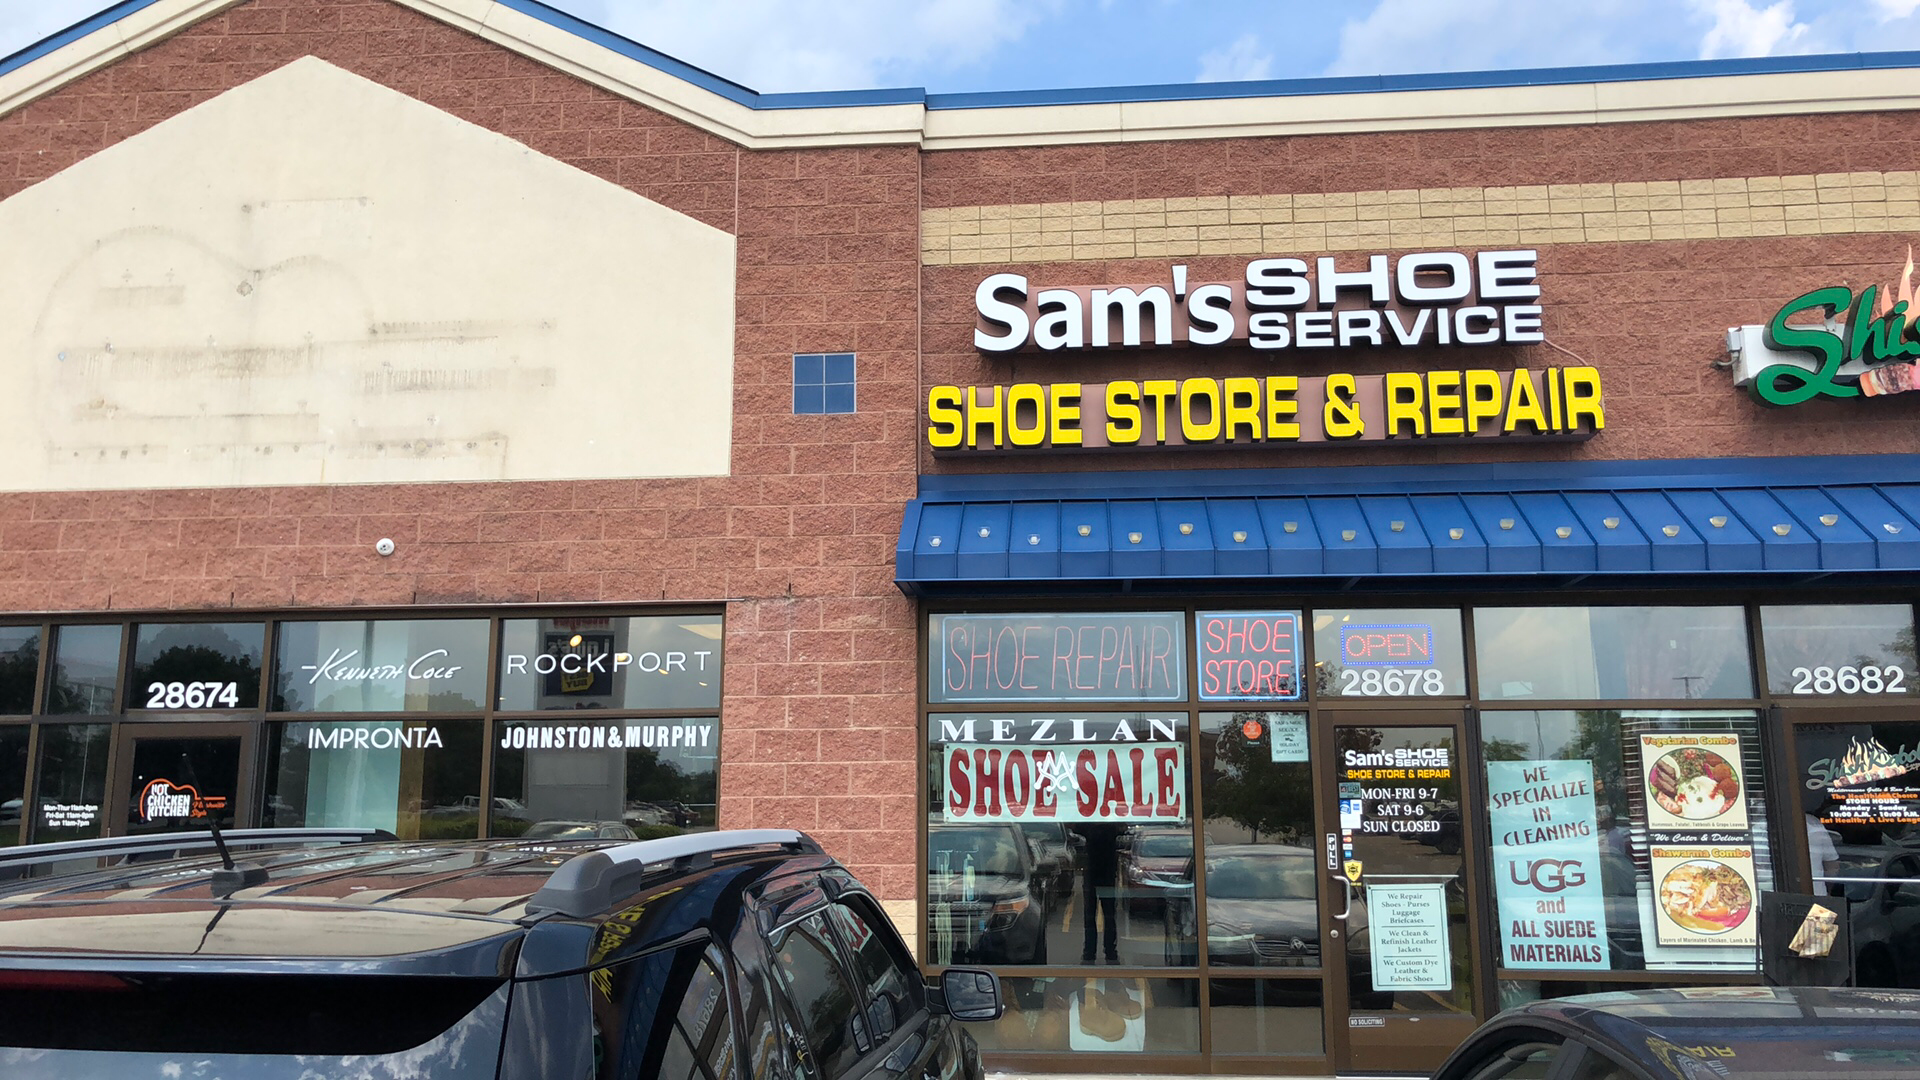 Sam's Shoe Service